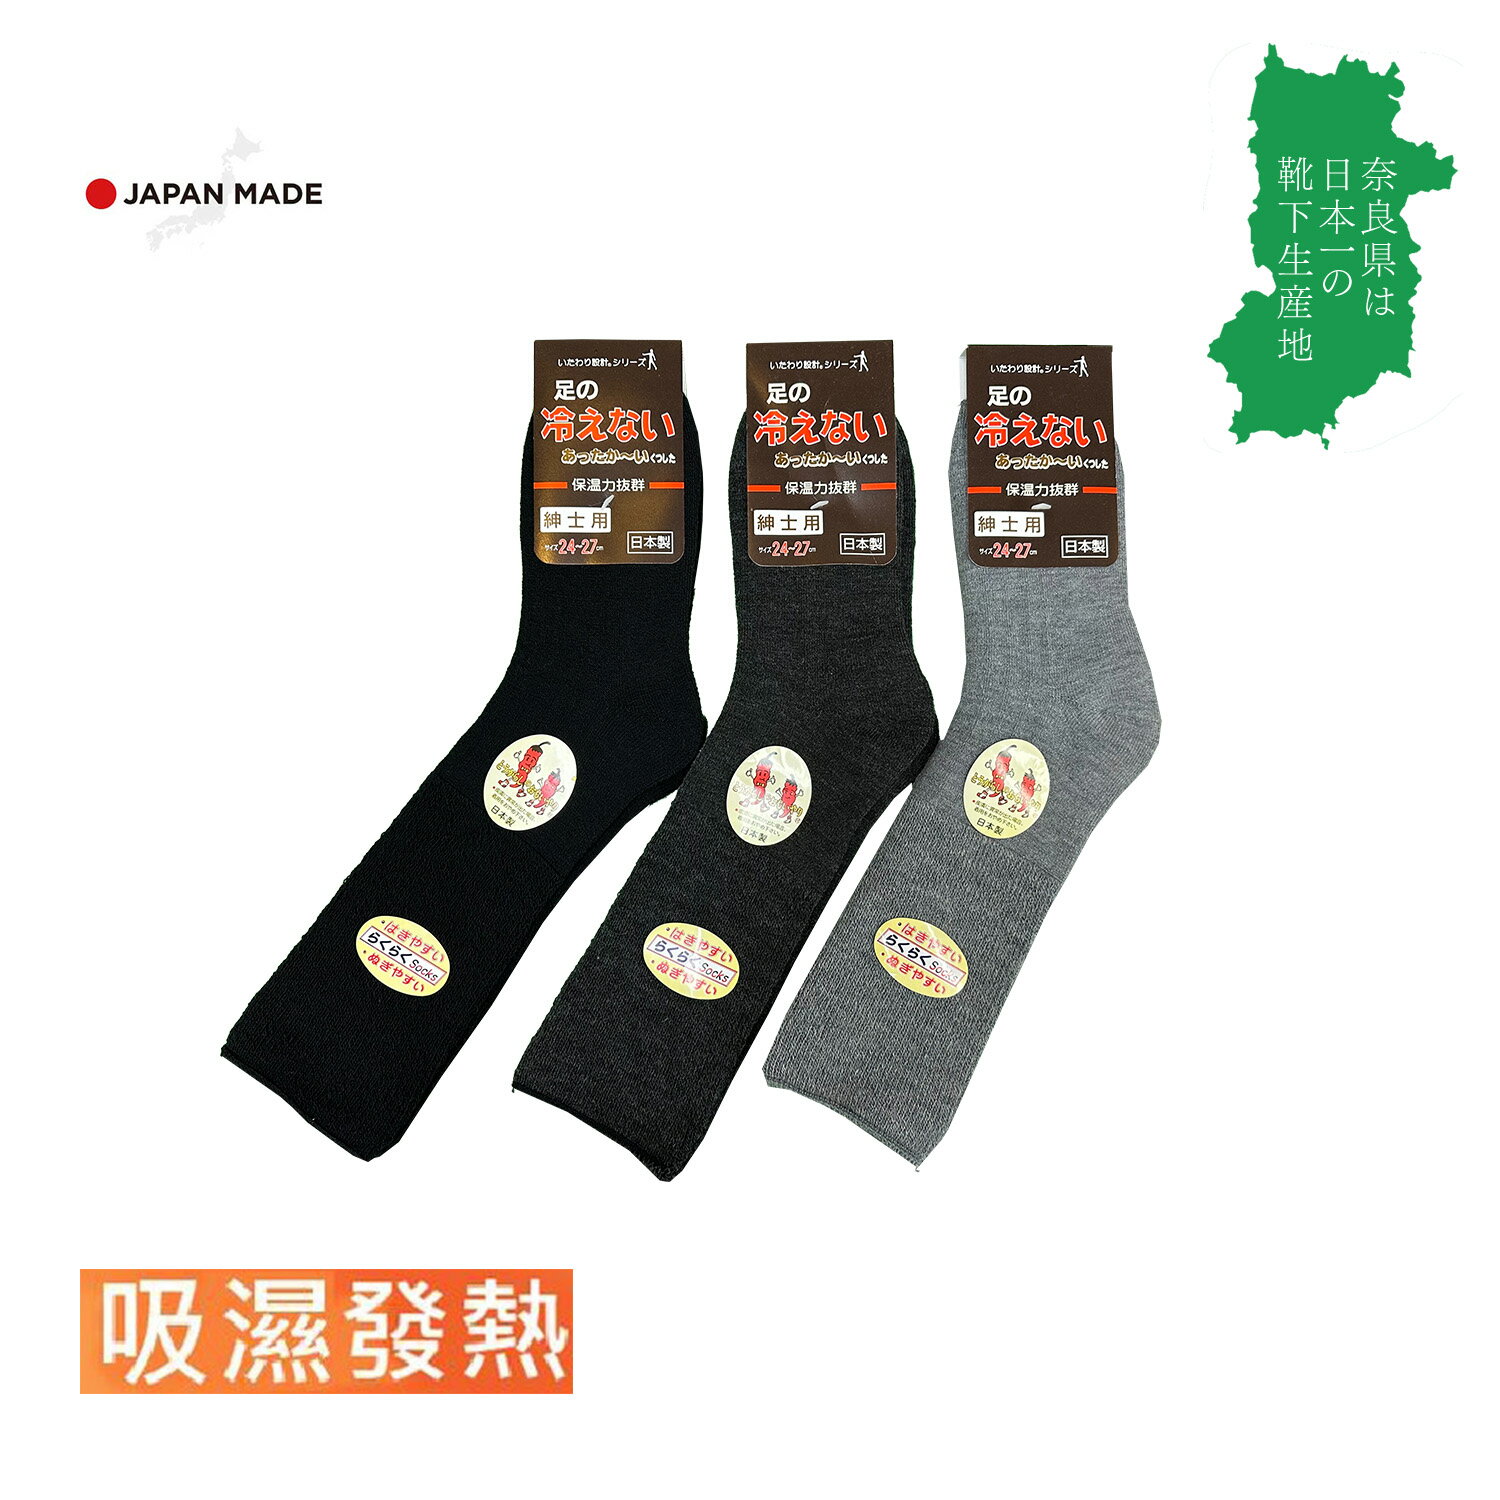 日本製 奈良靴下組合 男士冬季發熱保暖襪 羊毛襪 寬口襪(2色)